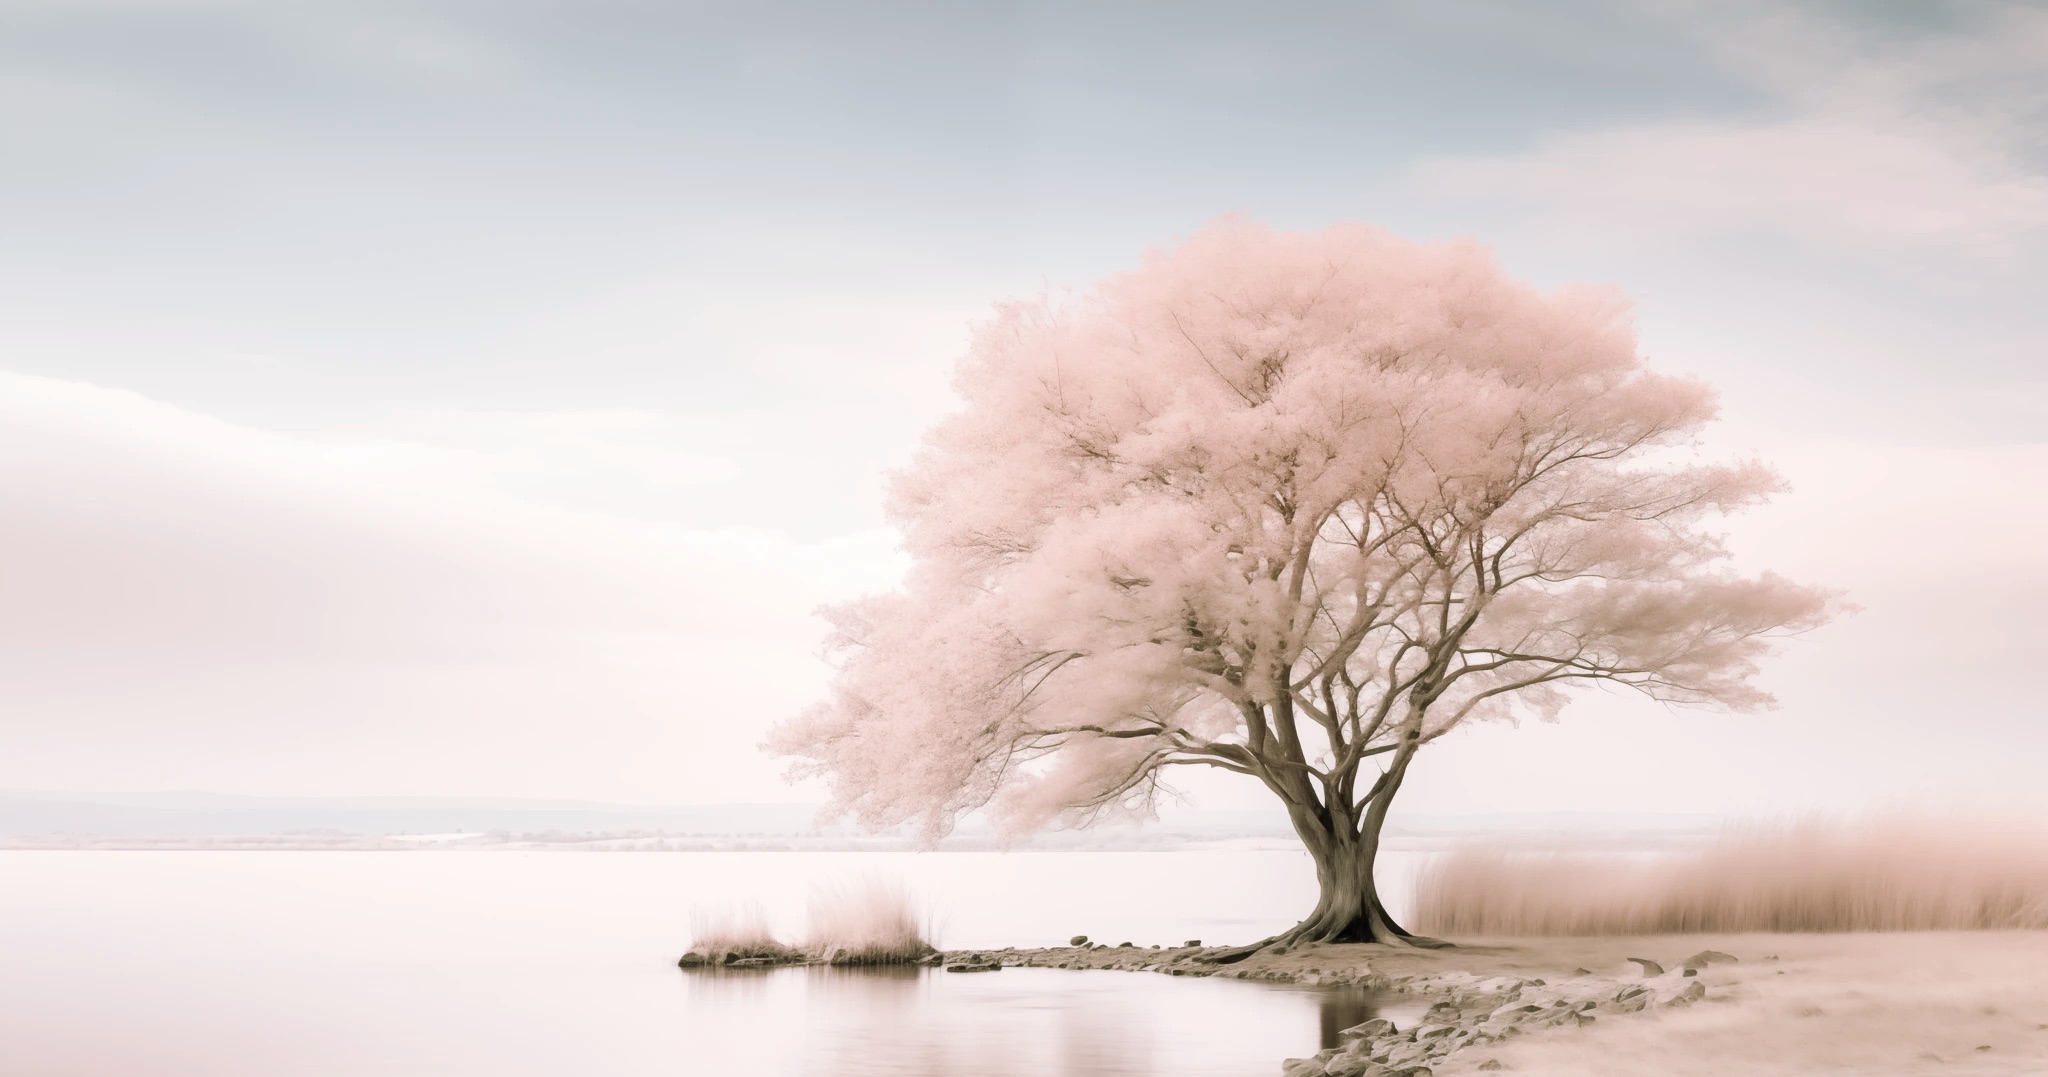 Csendes táj virágzó fával meditációra hív.